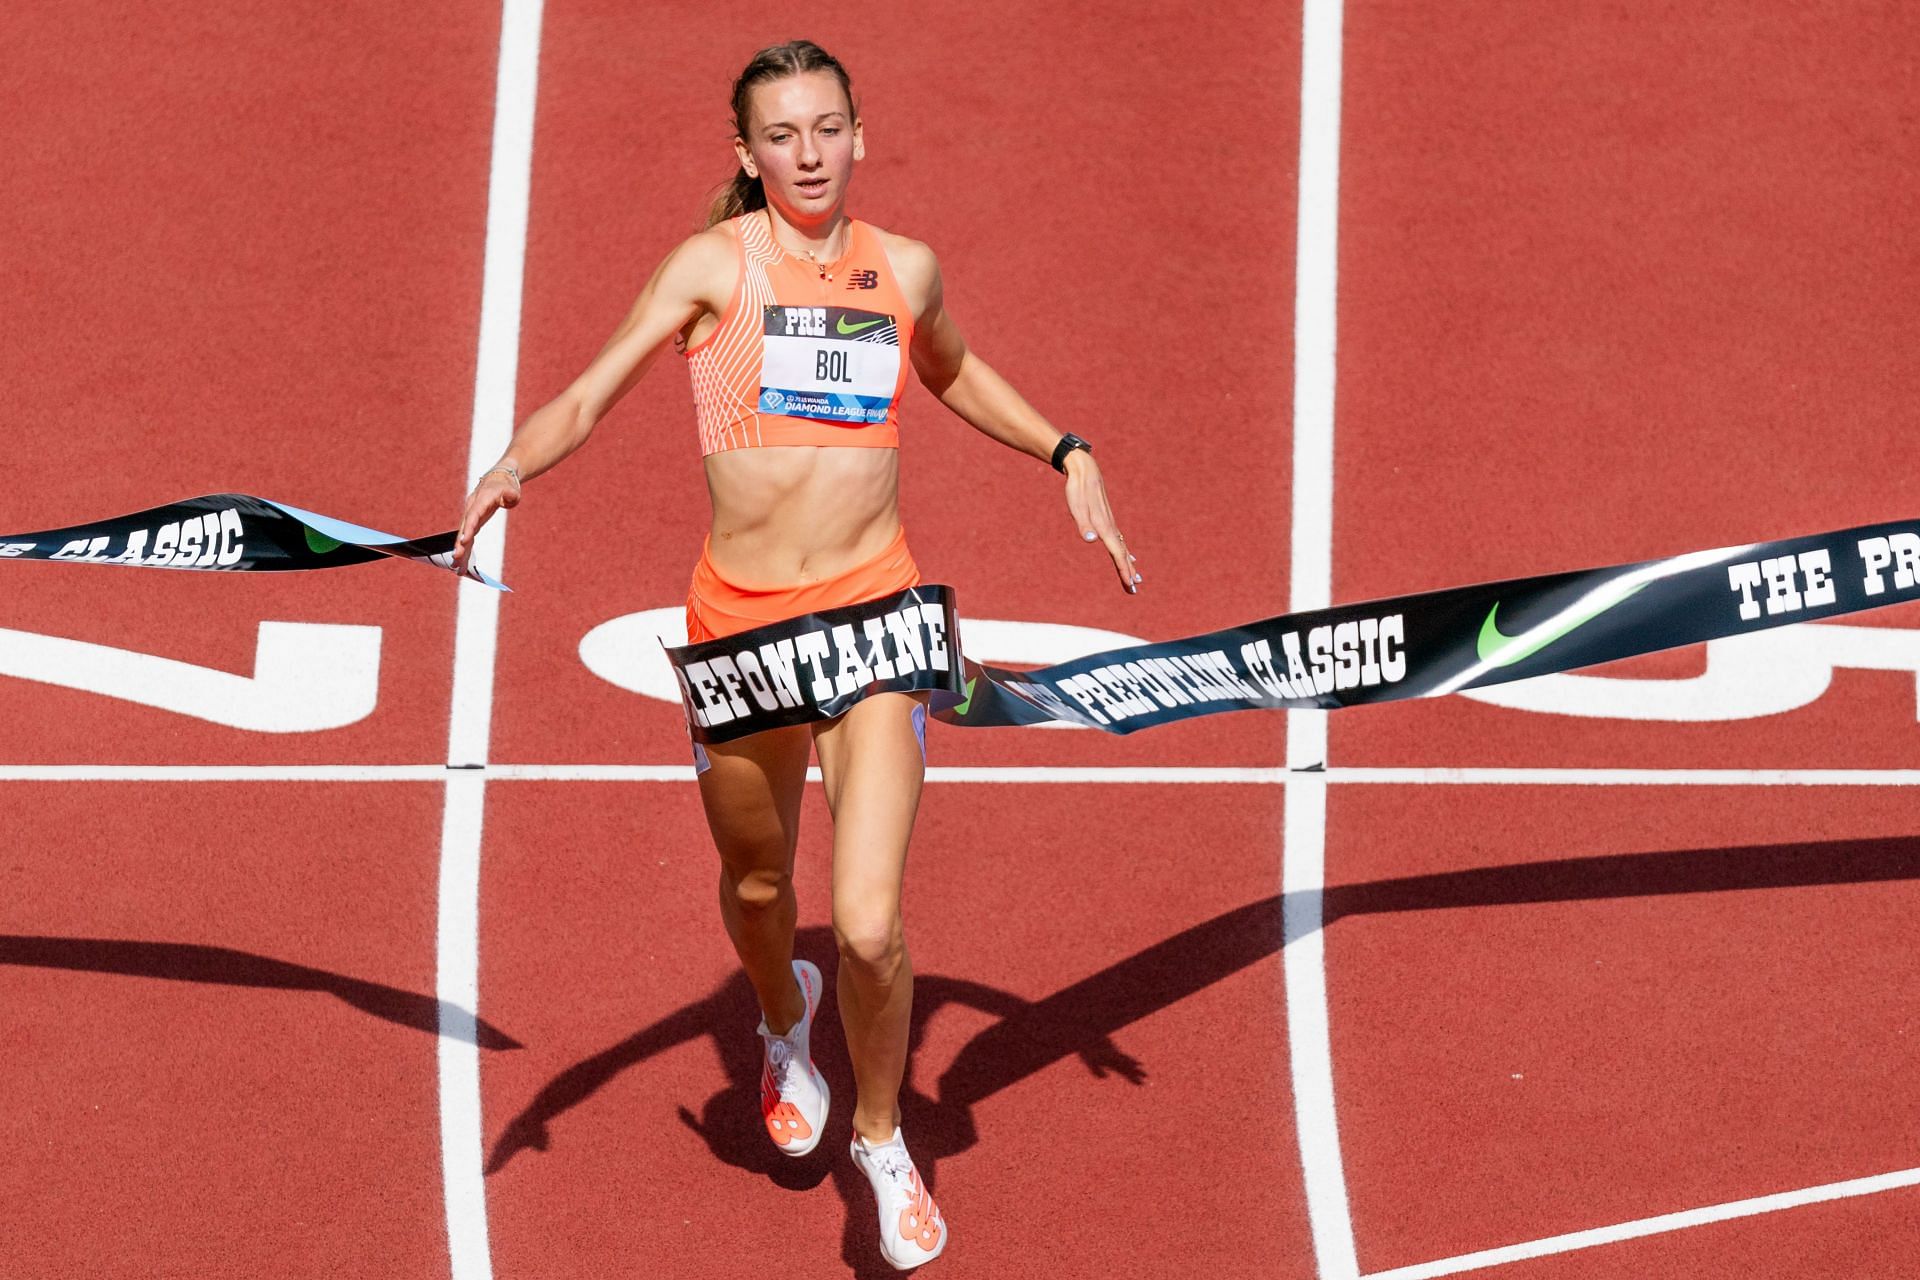 Dutch Runner Sets Women's Indoor 400-Meter World Record